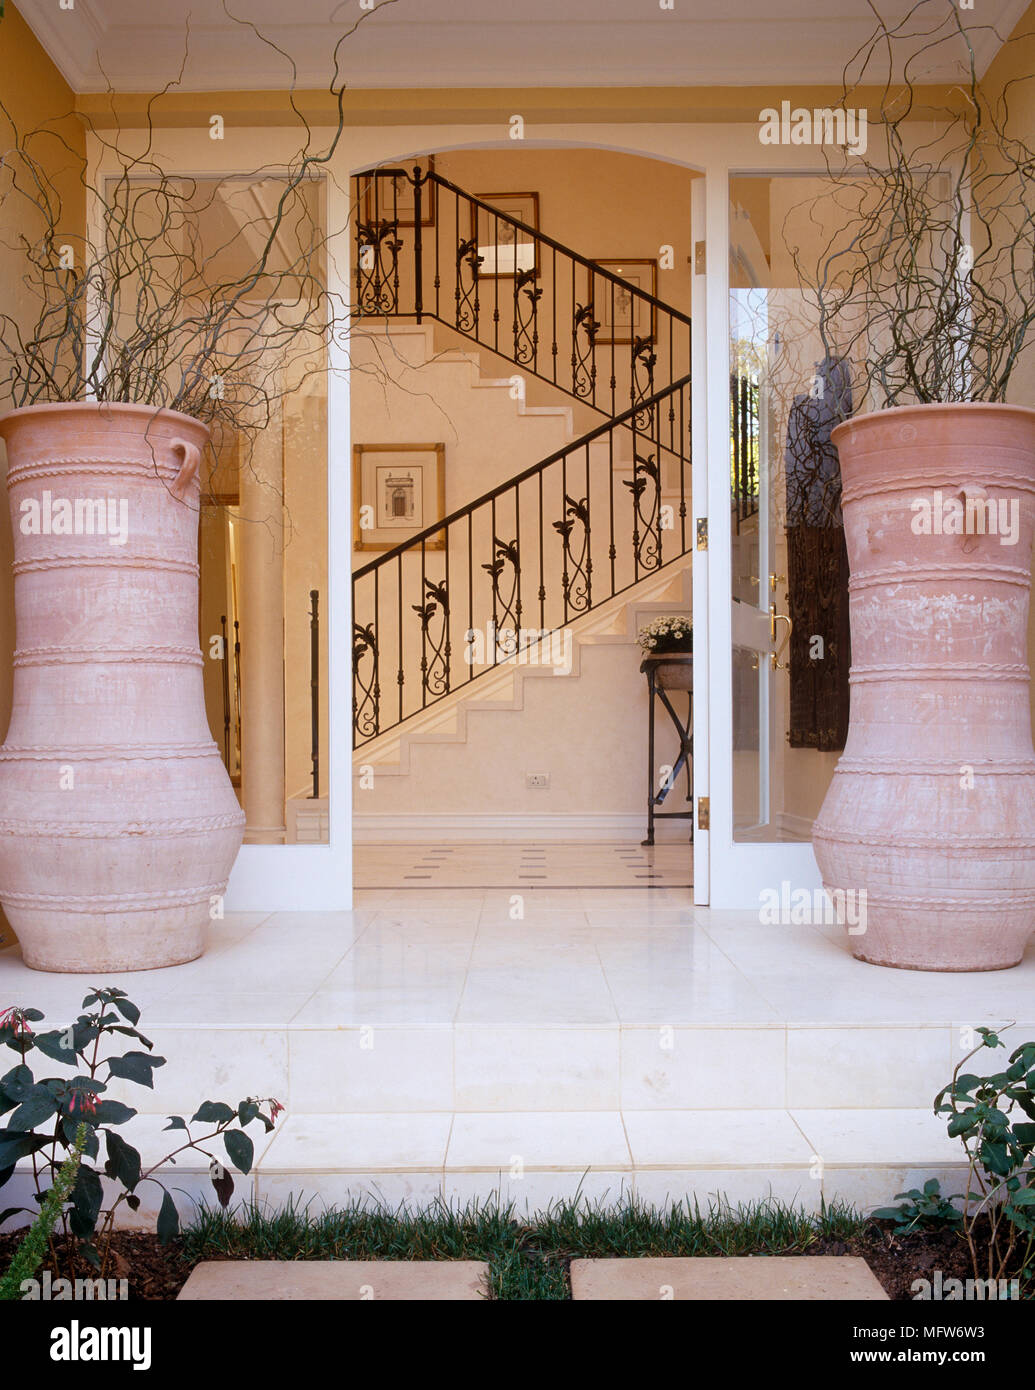 Haupteingang mit Fliesen- Schritt und eine Veranda mit zwei großen Terracotta Töpfen flankiert Stockfoto